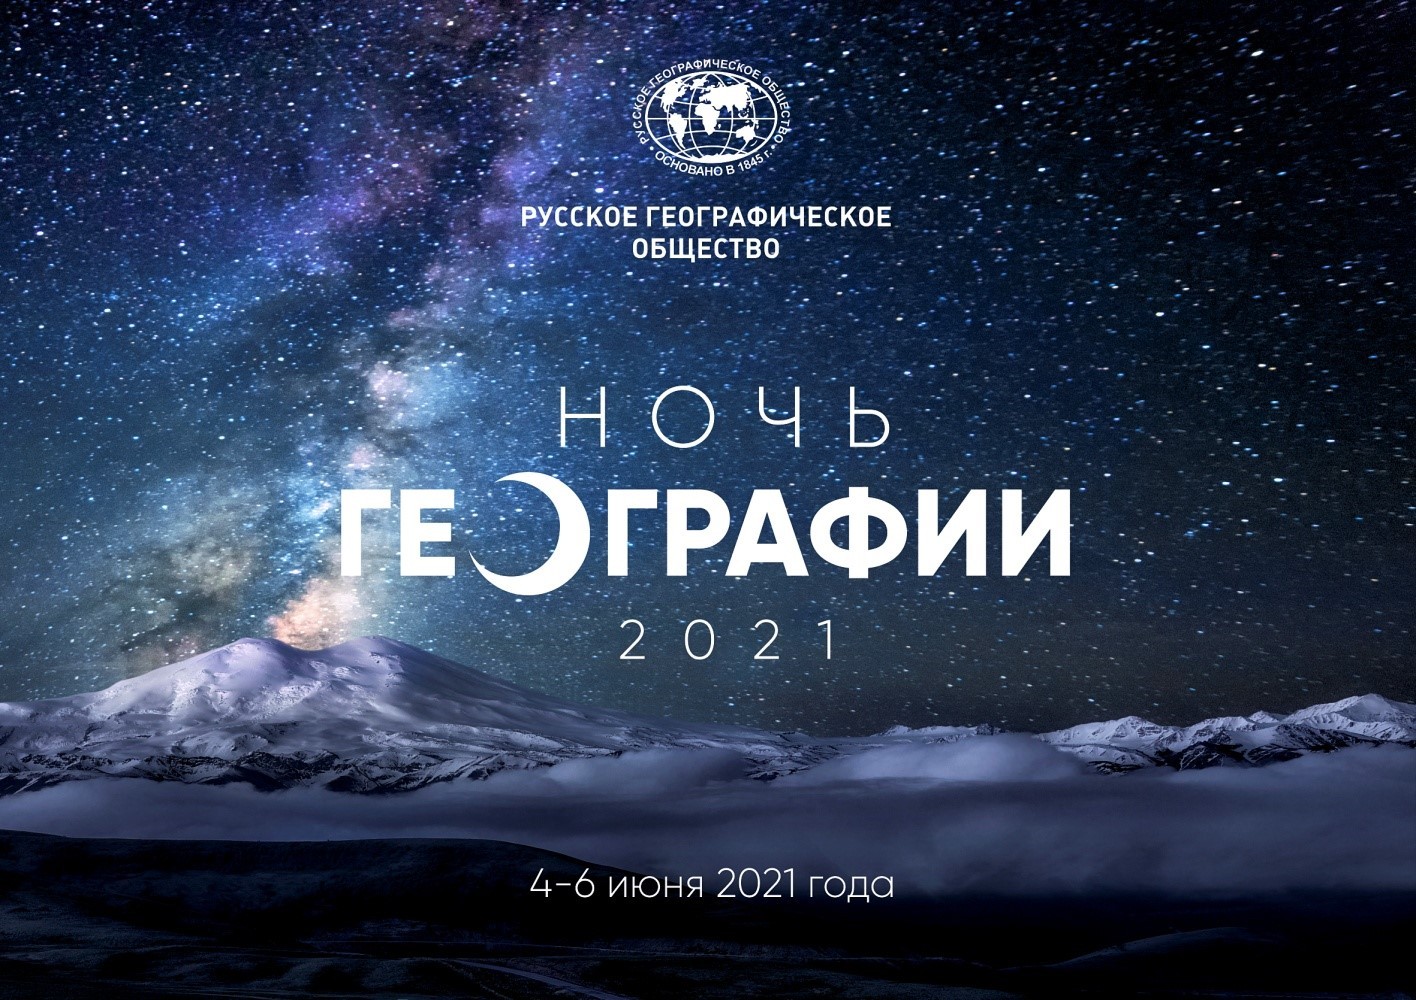 АНОНС НОЧИ ГЕОГРАФИИ-2021 В ЧУВАШСКОЙ РЕСПУБЛИКЕ